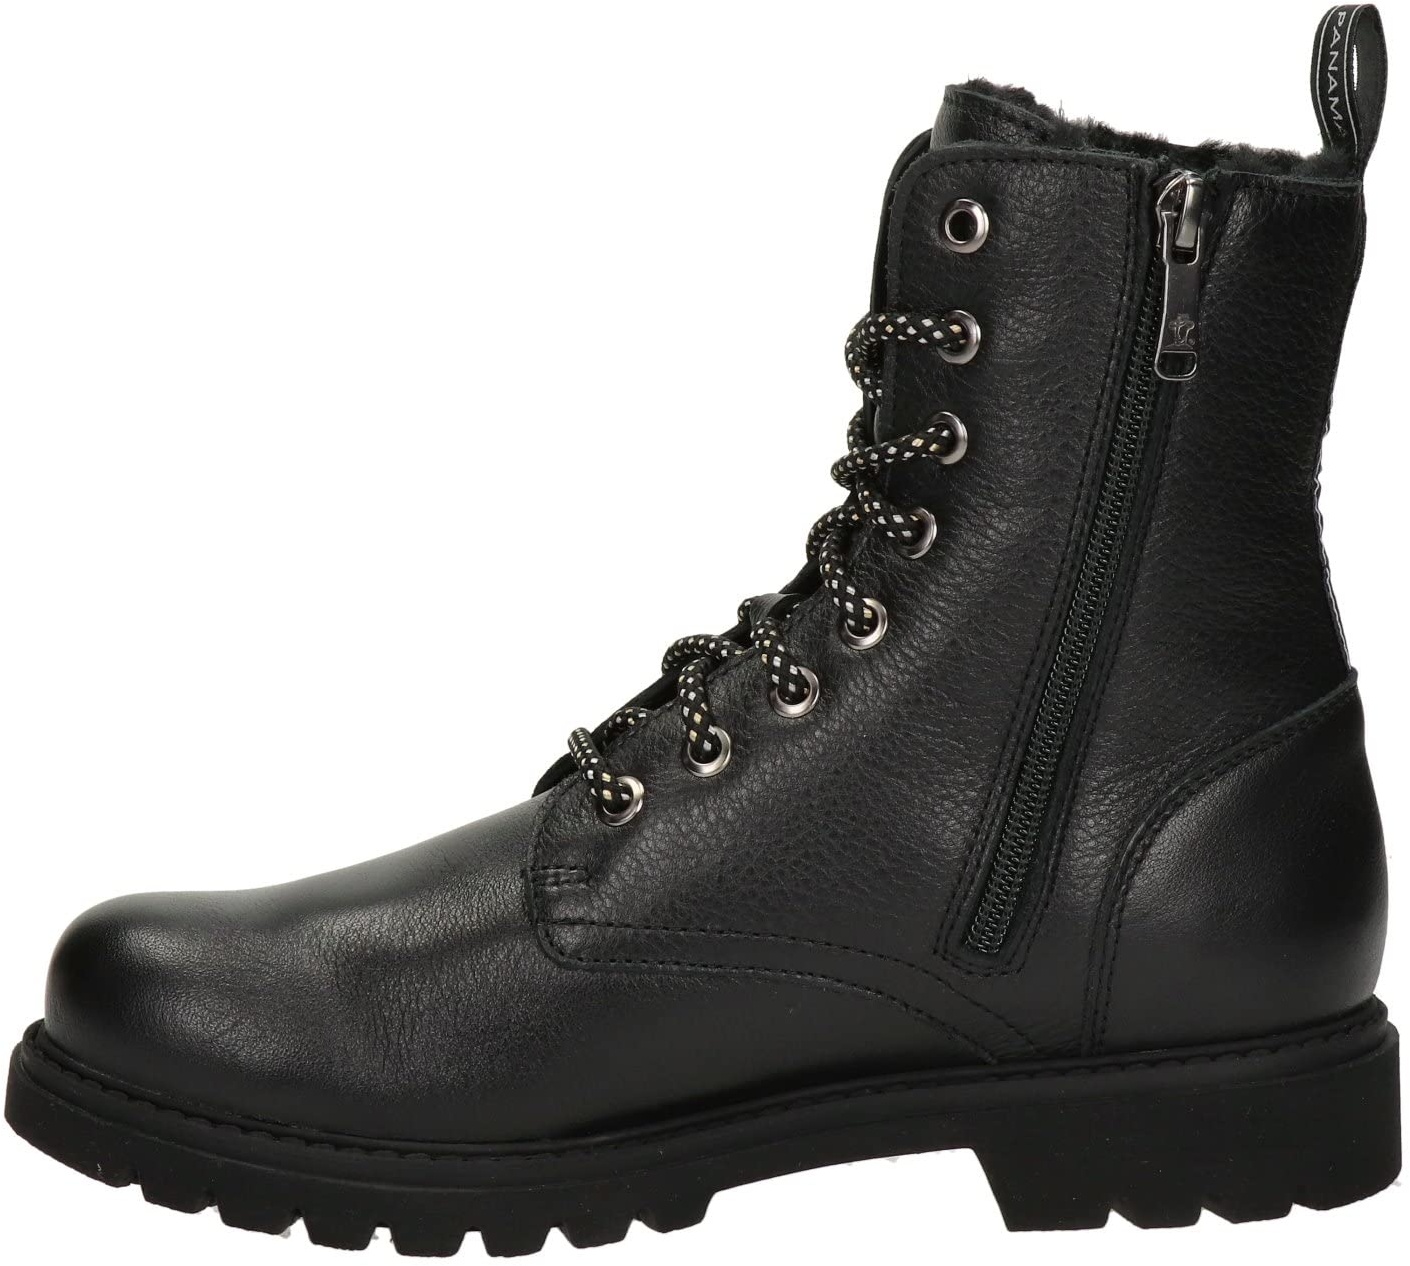 Panama Jack Herren Combat Boots Amur GTX, Männer Stiefeletten,Schnürsenkel,schnürstiefel,boots,stiefel,bootee,booties,Schwarz,40 EU / 7 UK - 40 EU